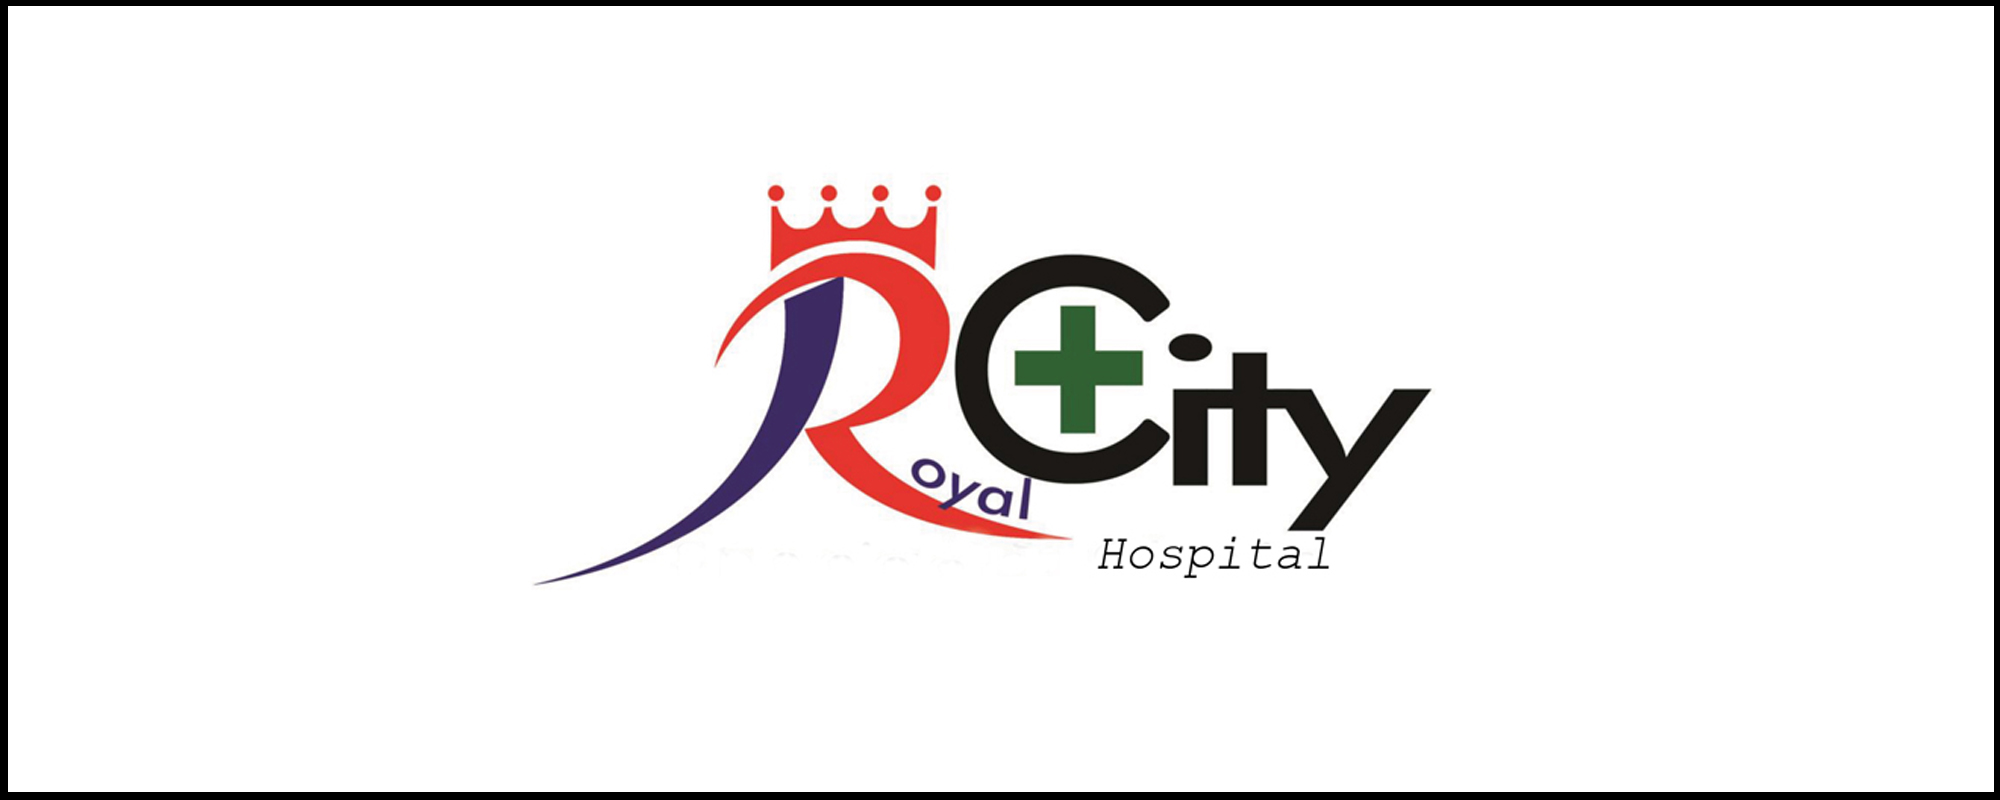 royal city hospital.jpg